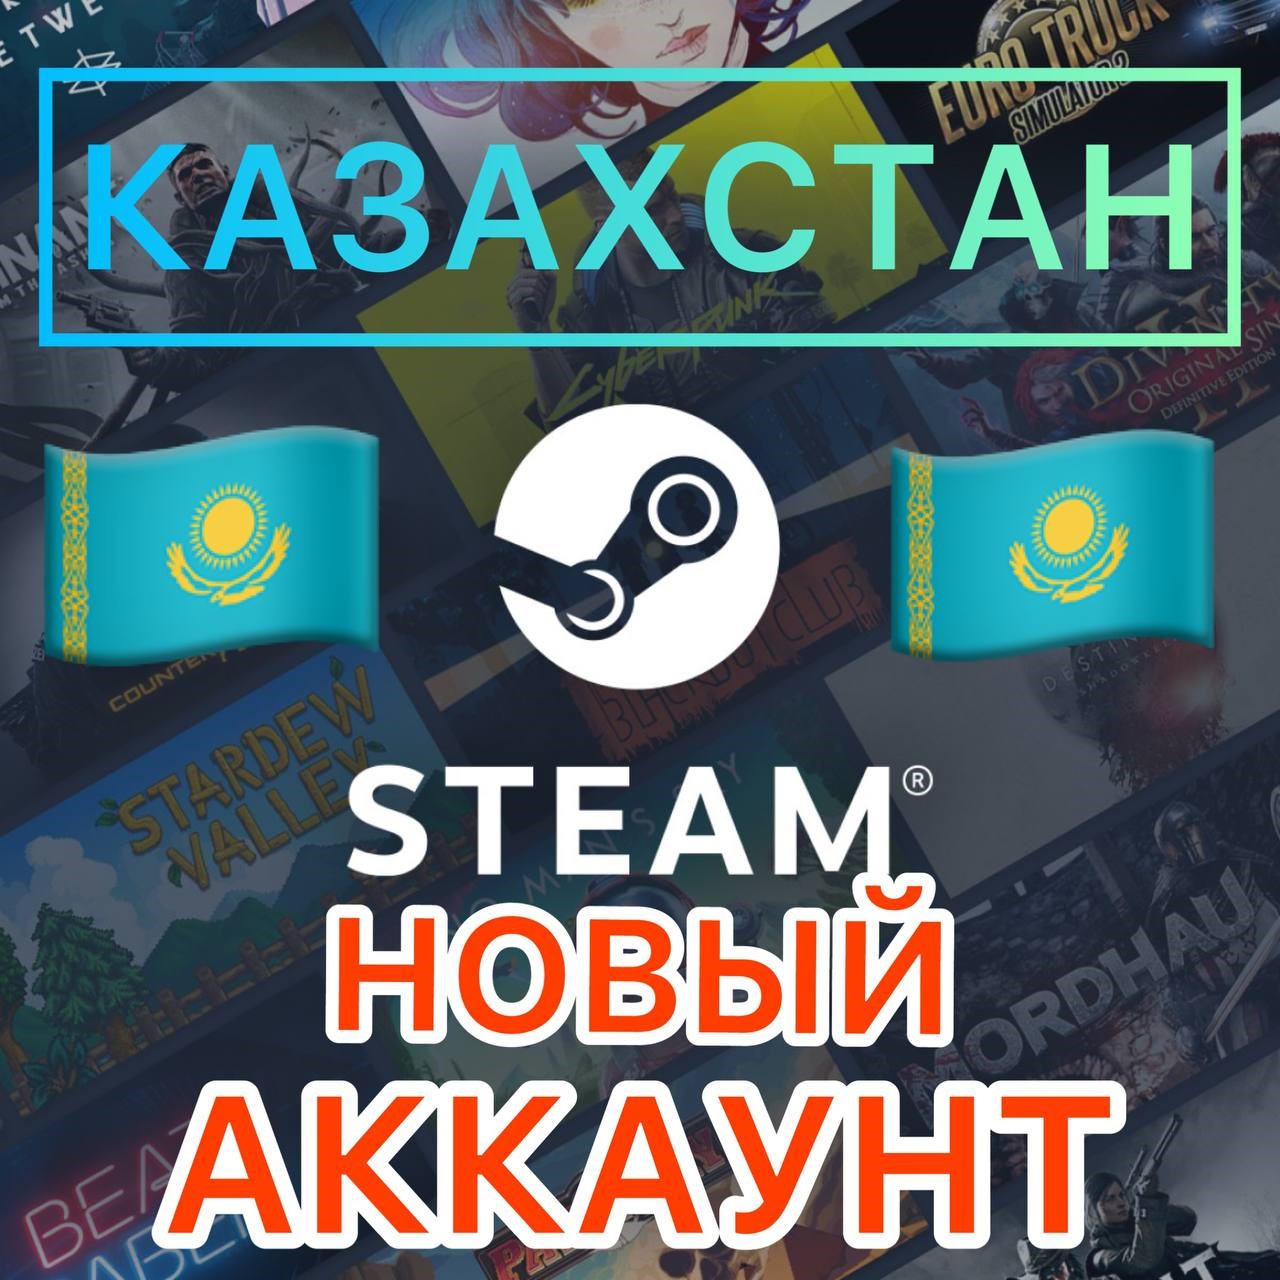 Steam казахстан qiwi что это такое фото 101